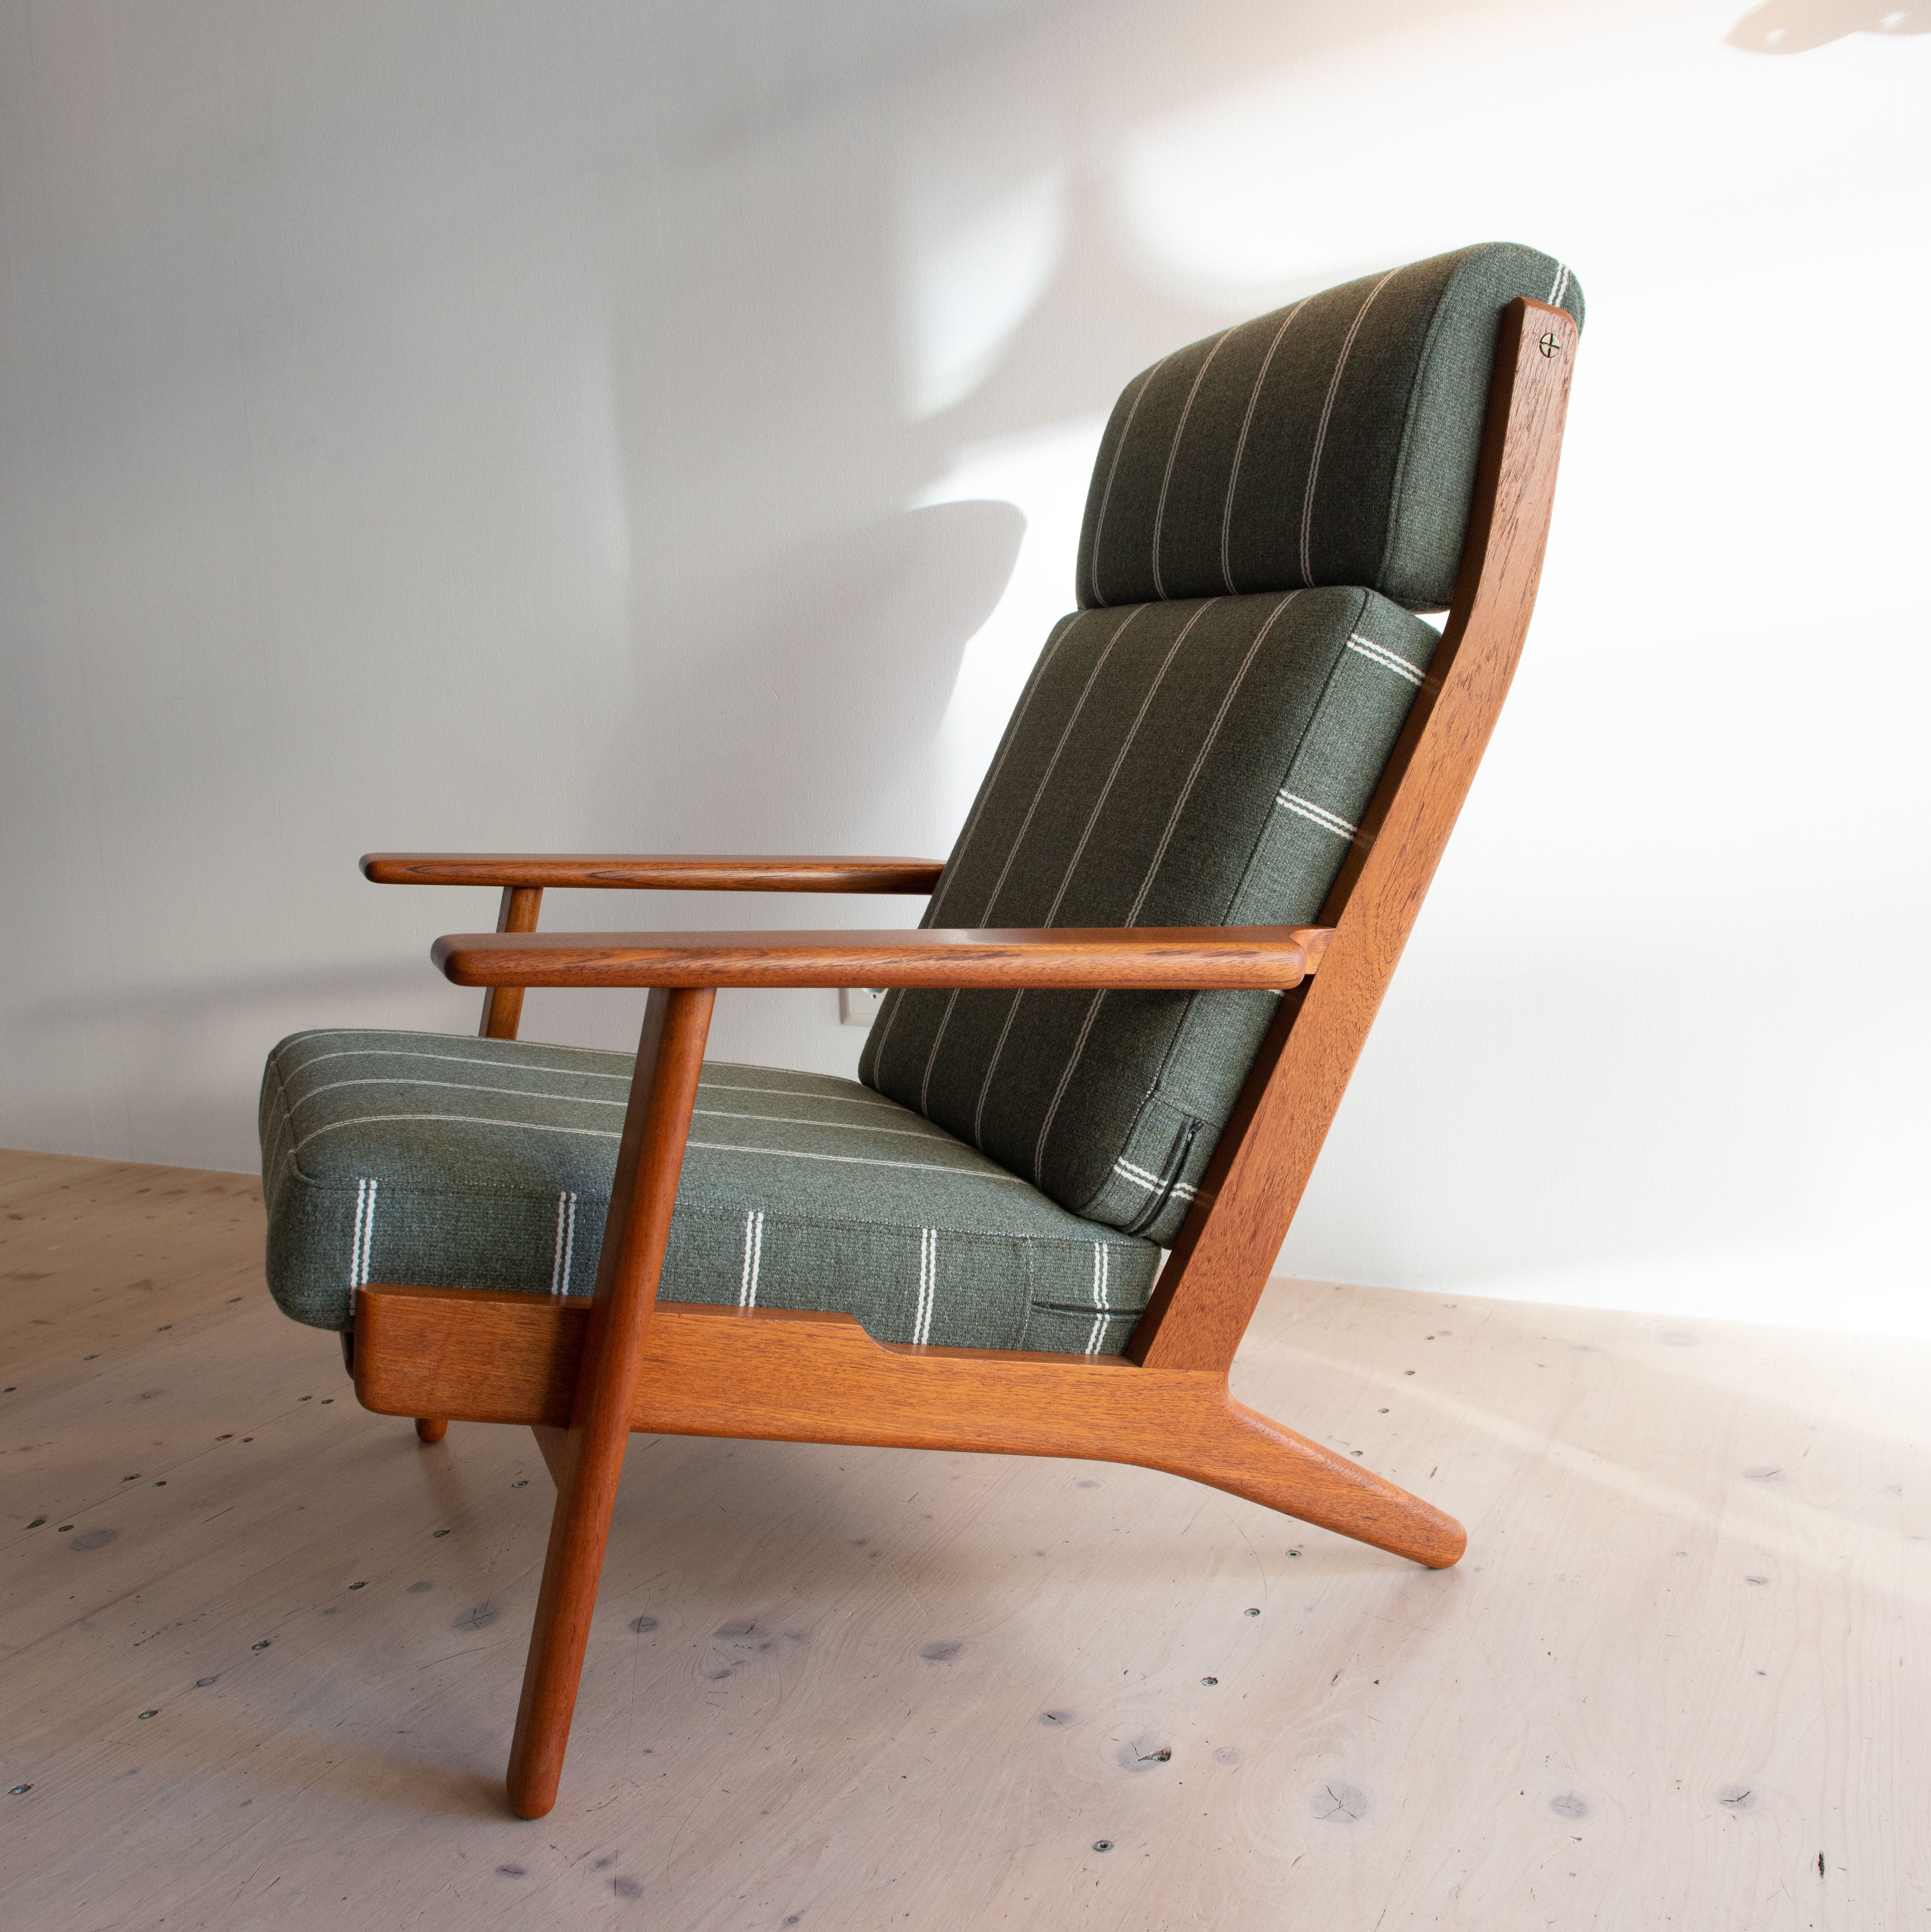 GE290 Highback Lounge Chair by Hans J. Wegner for Getama. Made in Denmark, 1950s. Available at heyday möbel, Grubenstrasse 19, 8045 Zürich, Switzerland.